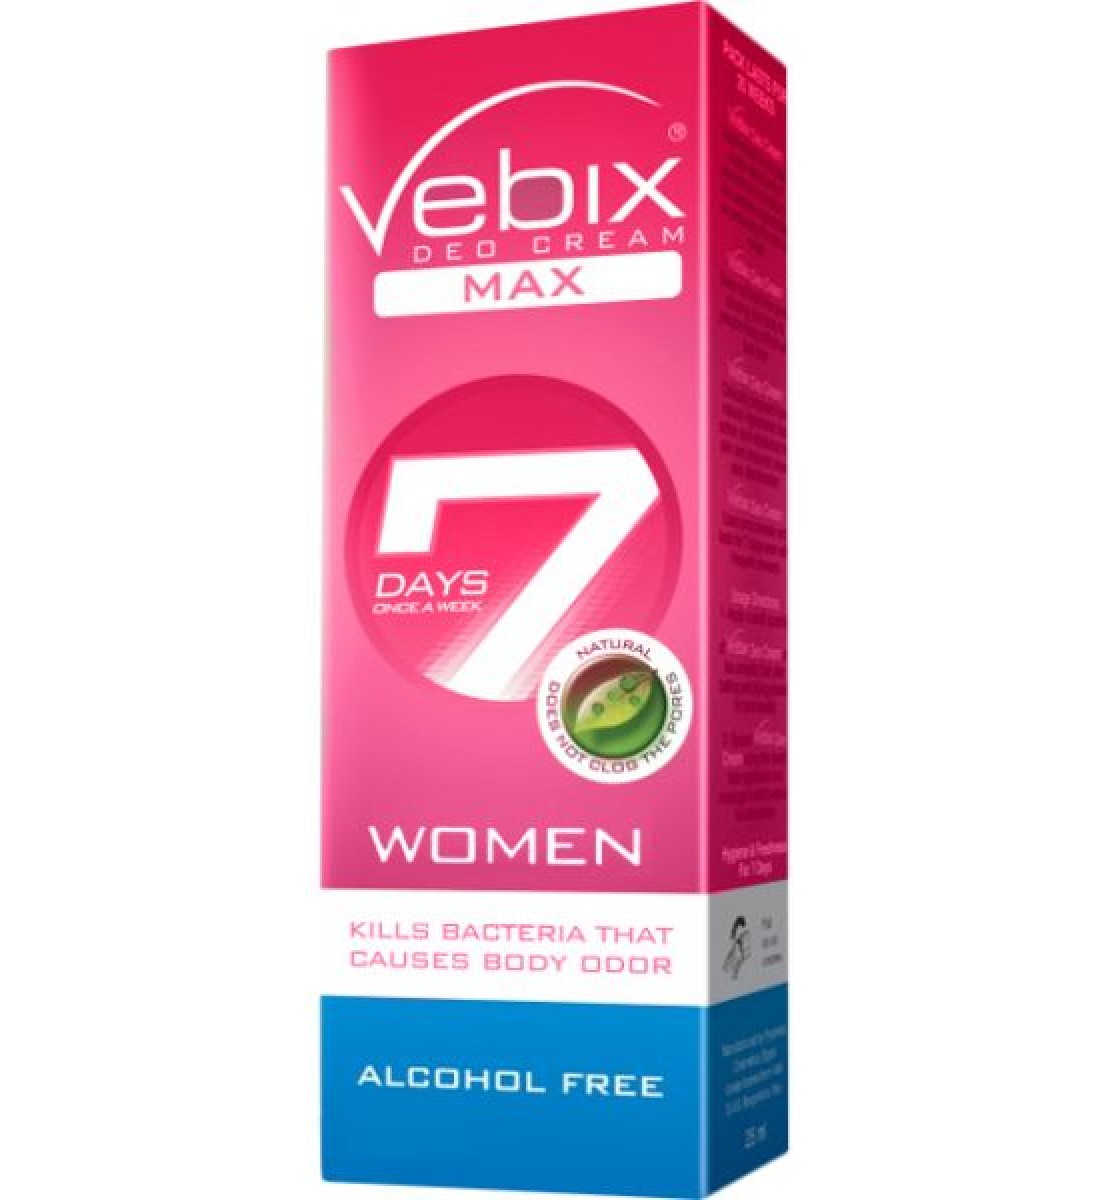 Vebix Deodorant Max Mystic -Women, 25 gm